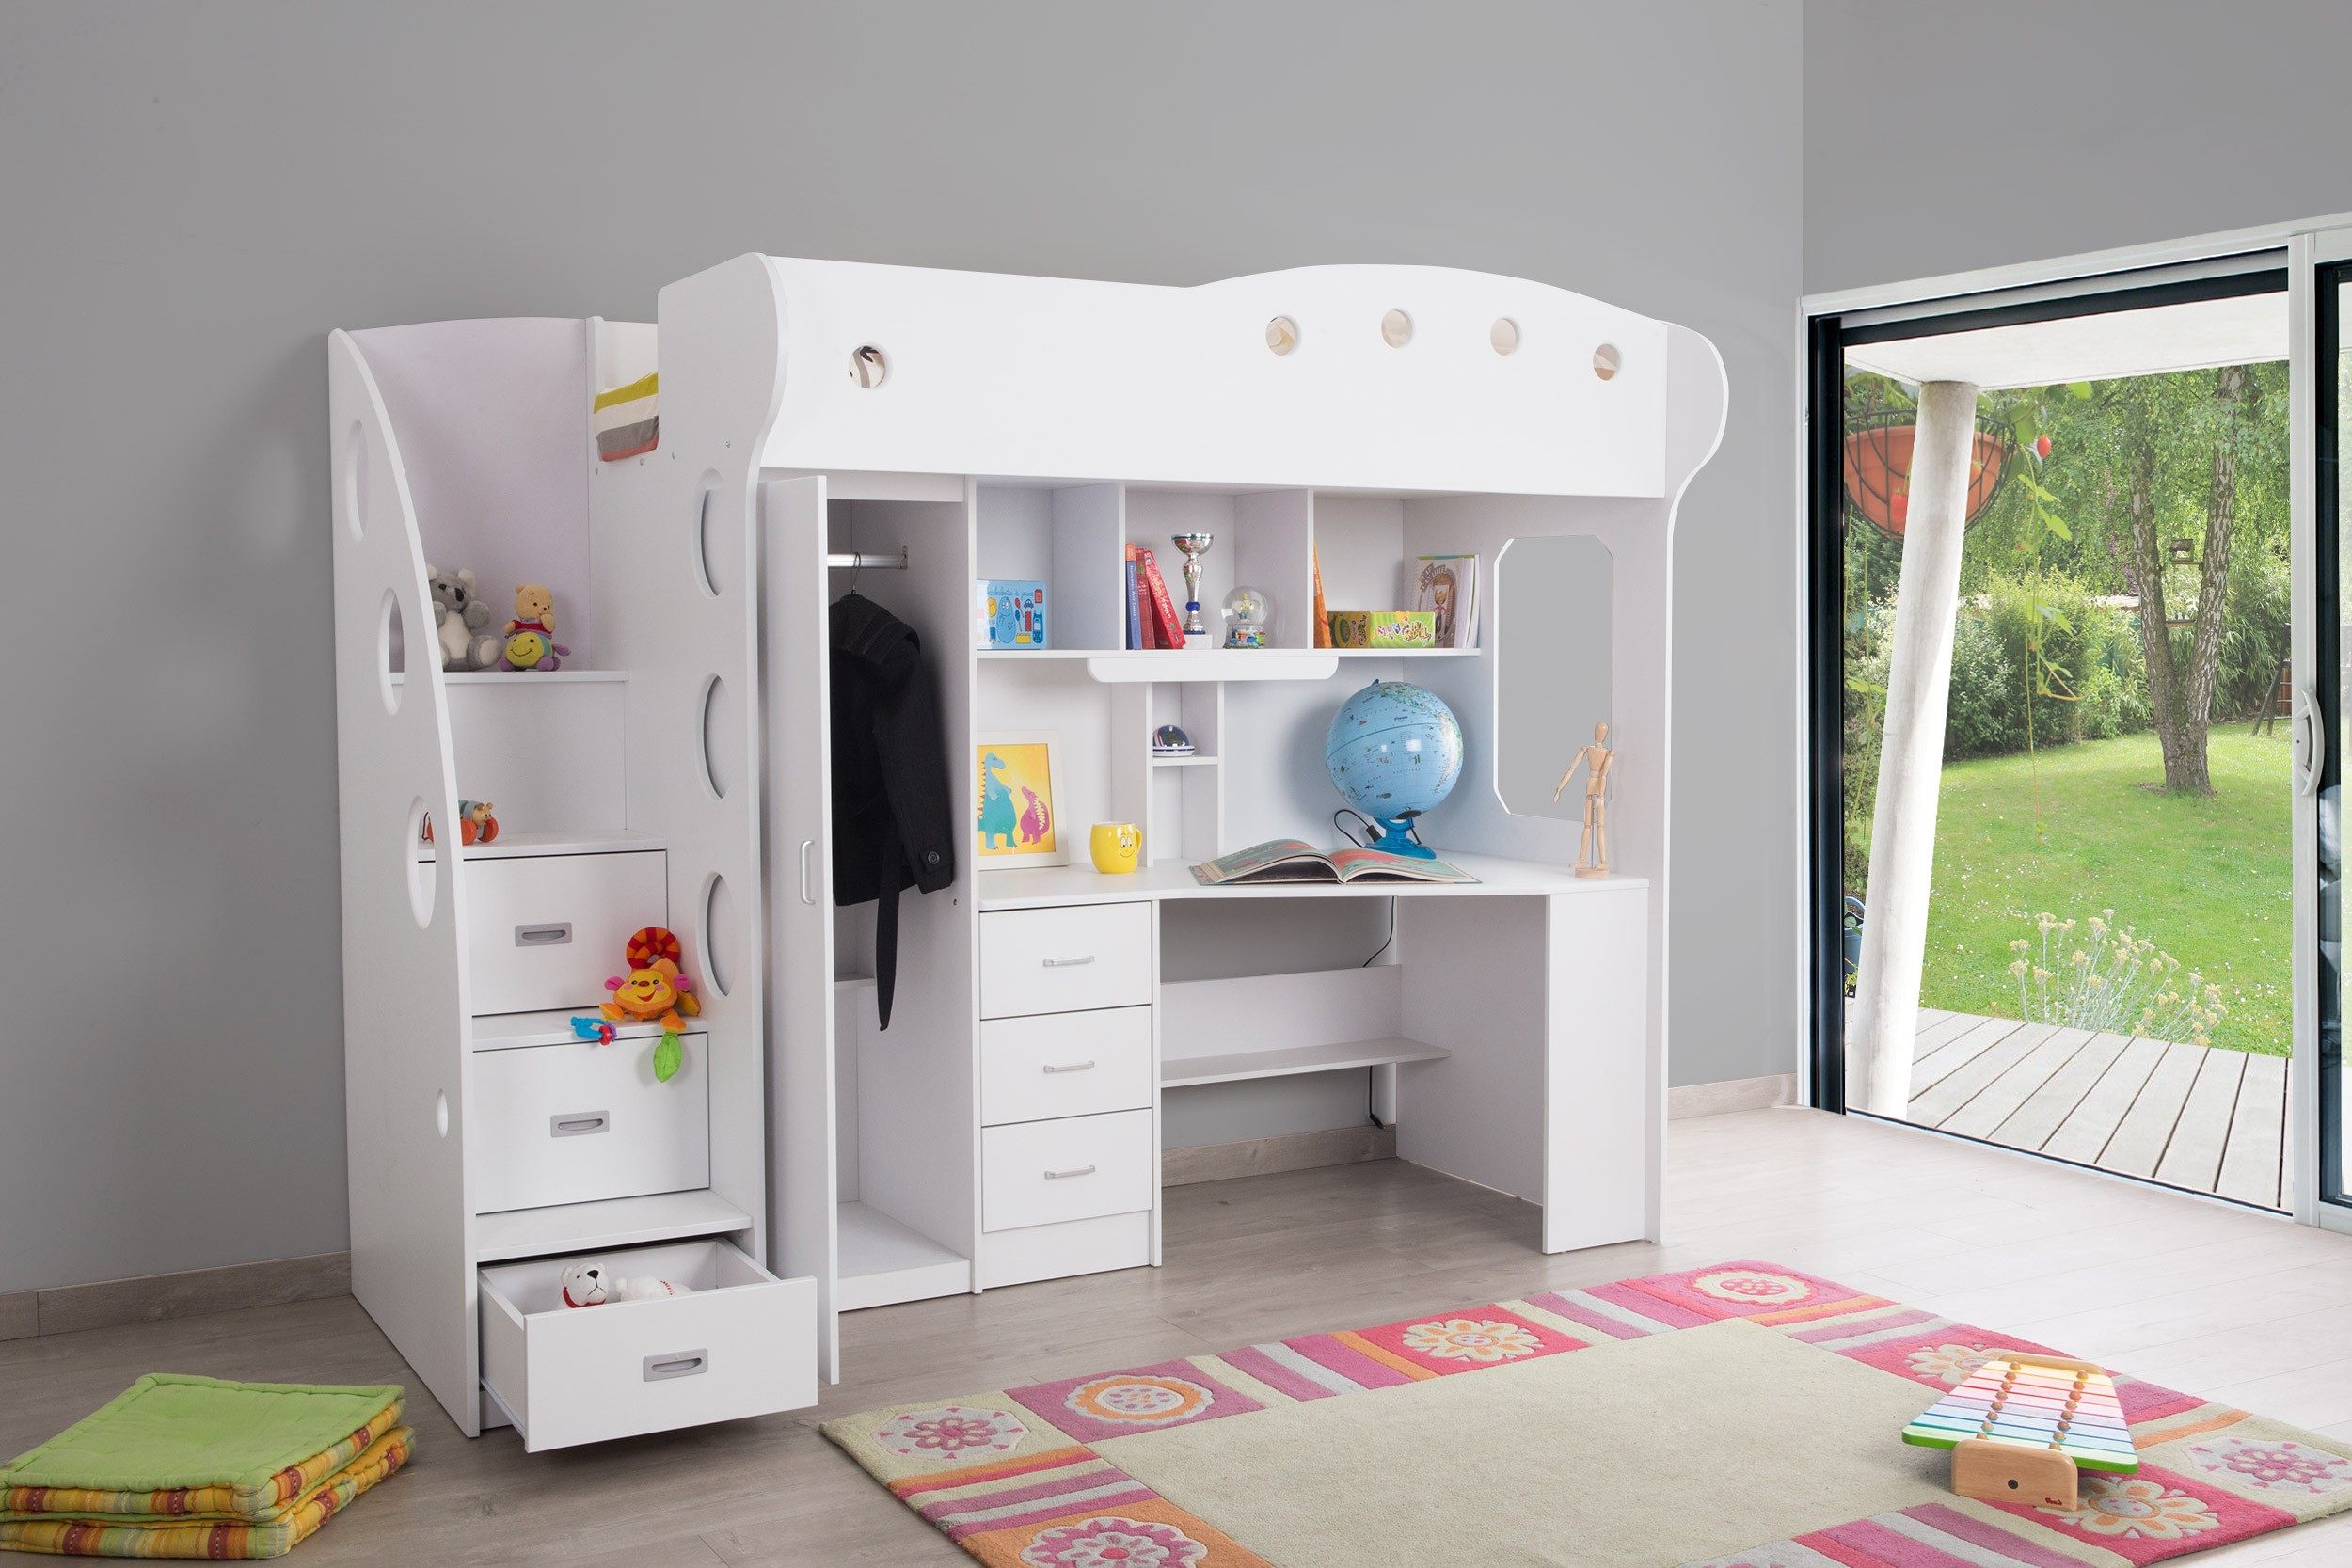 Ikea Lit Cabane Bel Charmant Chambre Enfant Lit Superposé Et Lit Bine Ikea Maison Design